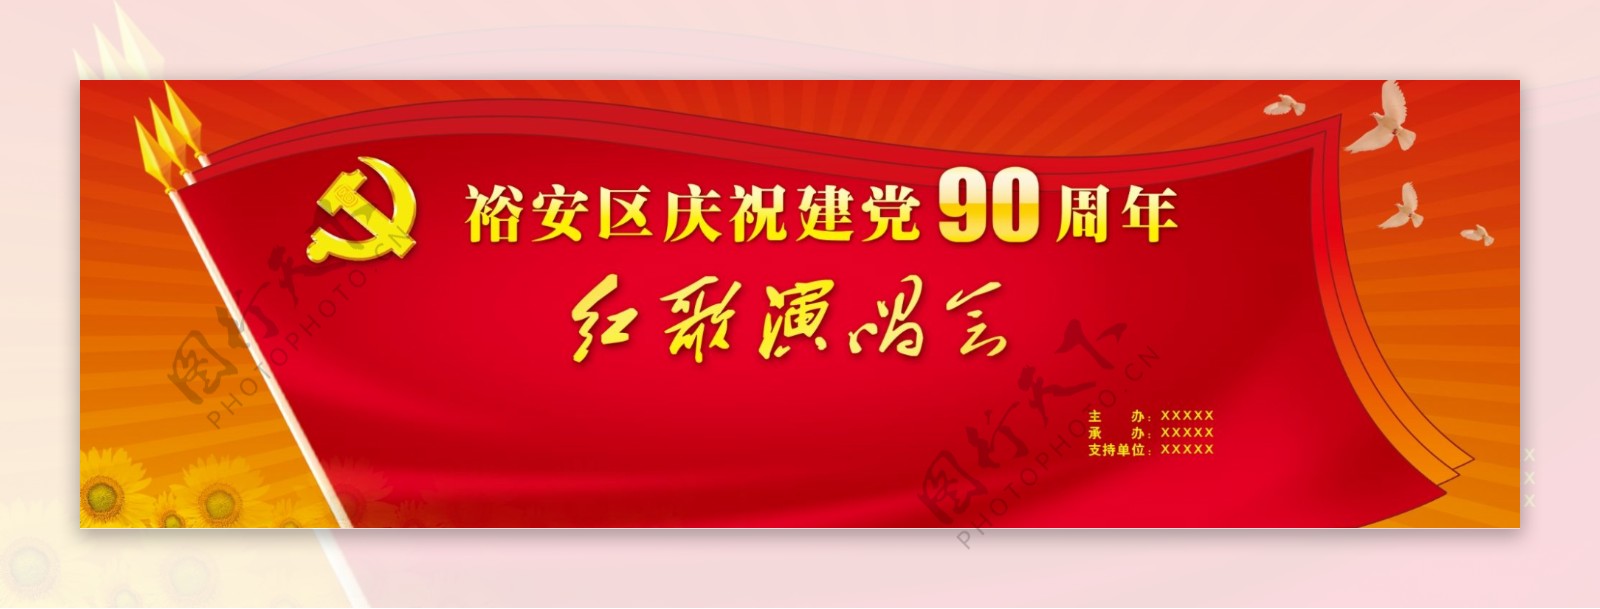 庆党90周年图片